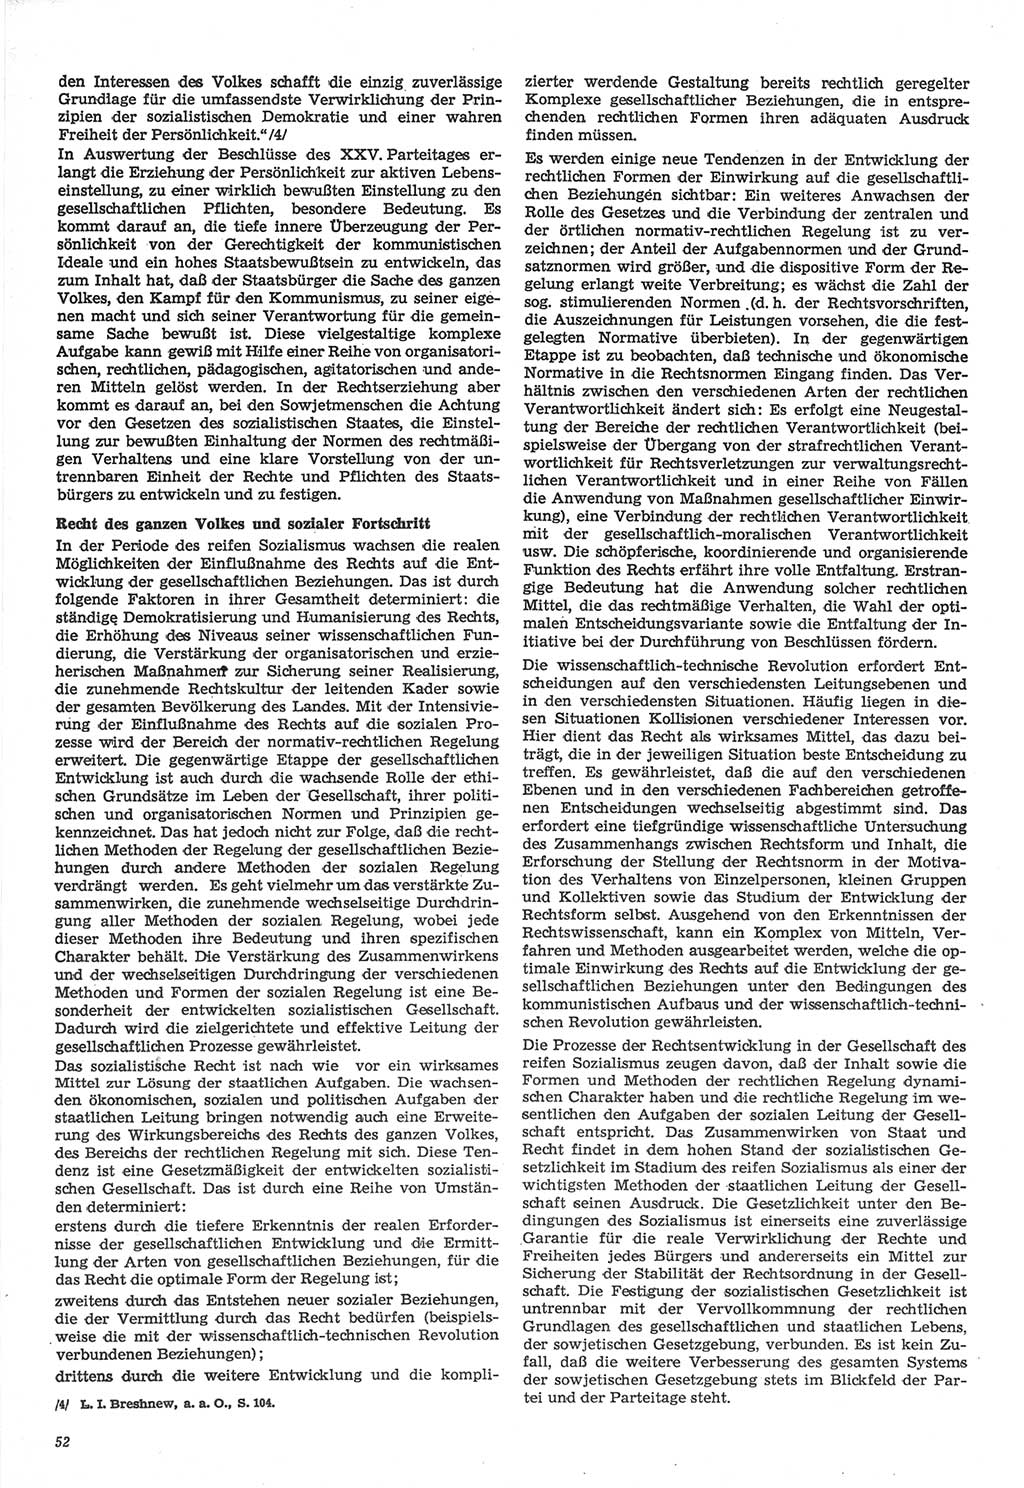 Neue Justiz (NJ), Zeitschrift für Recht und Rechtswissenschaft-Zeitschrift, sozialistisches Recht und Gesetzlichkeit, 31. Jahrgang 1977, Seite 52 (NJ DDR 1977, S. 52)